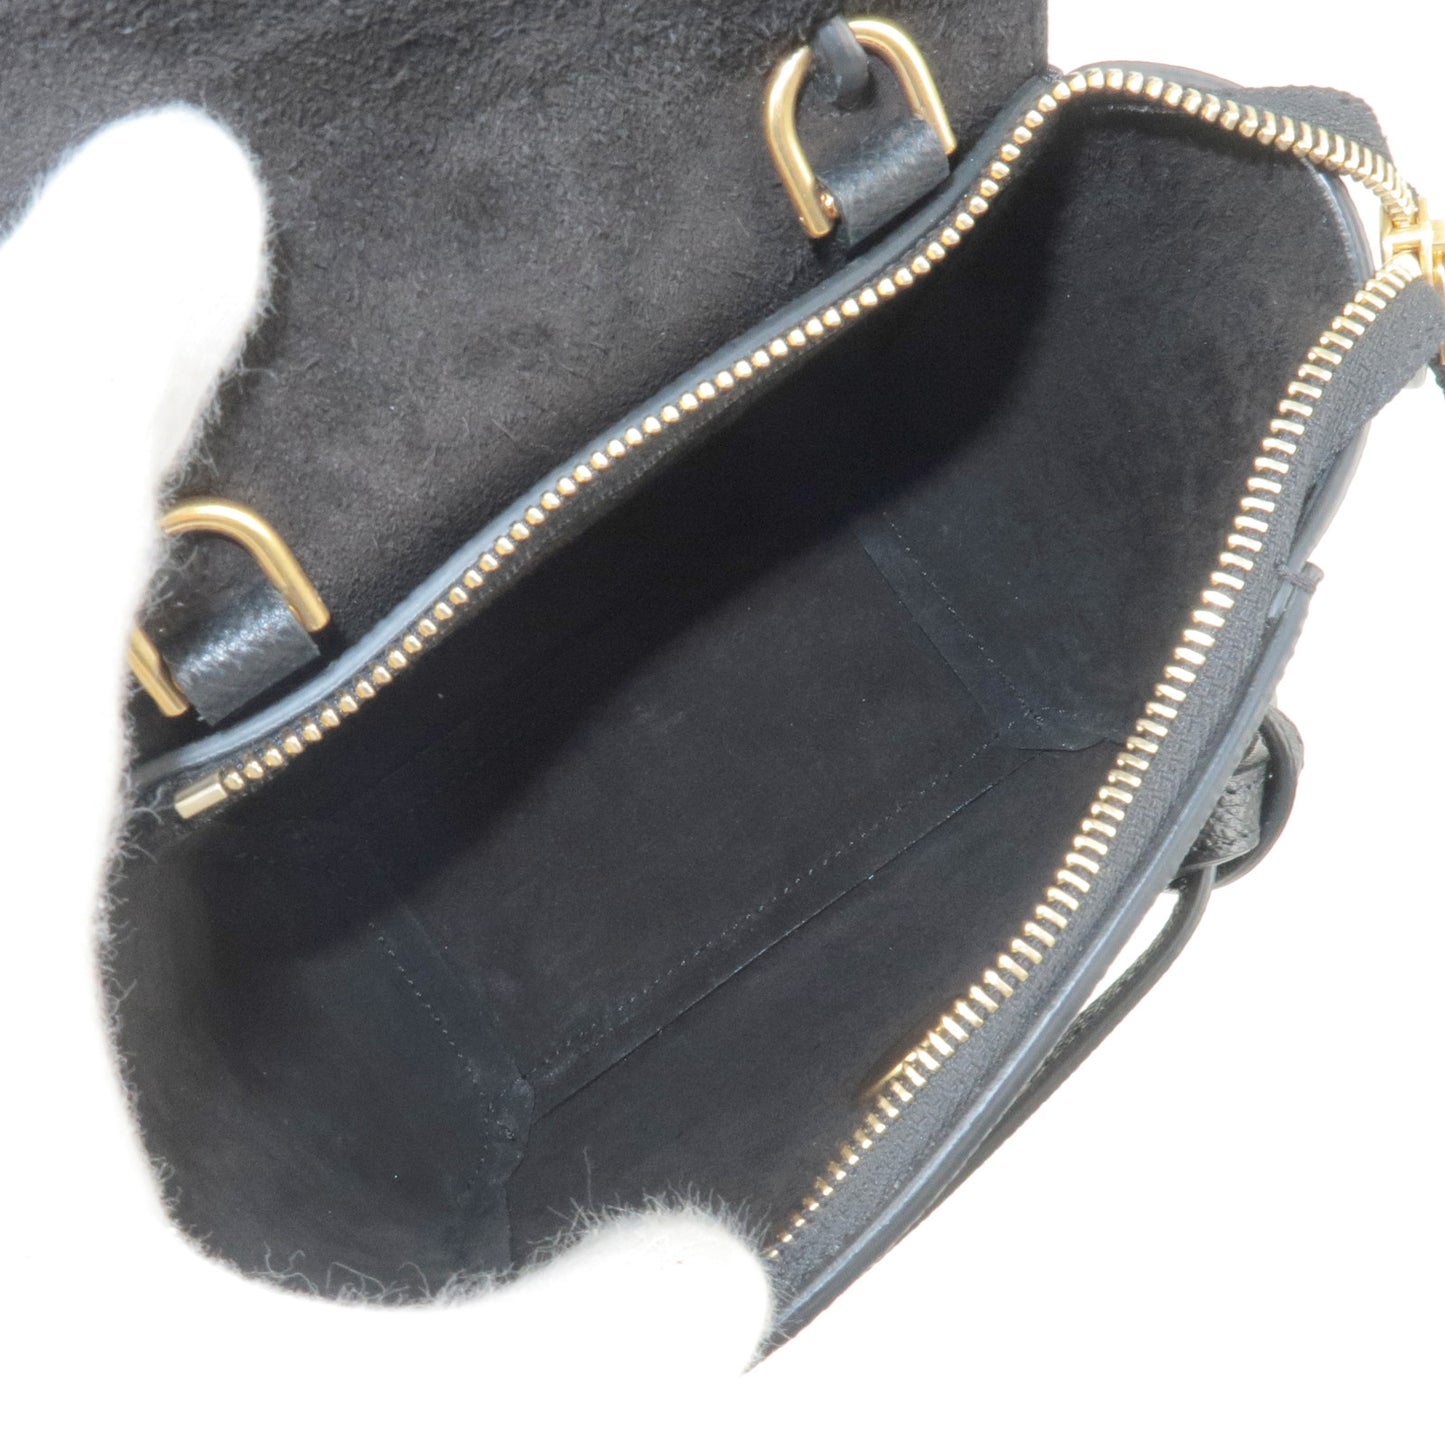 CELINE-Leather-Pico-Belt-Bag-2Way-Bag-Shoulder-Bag-Gray-194263